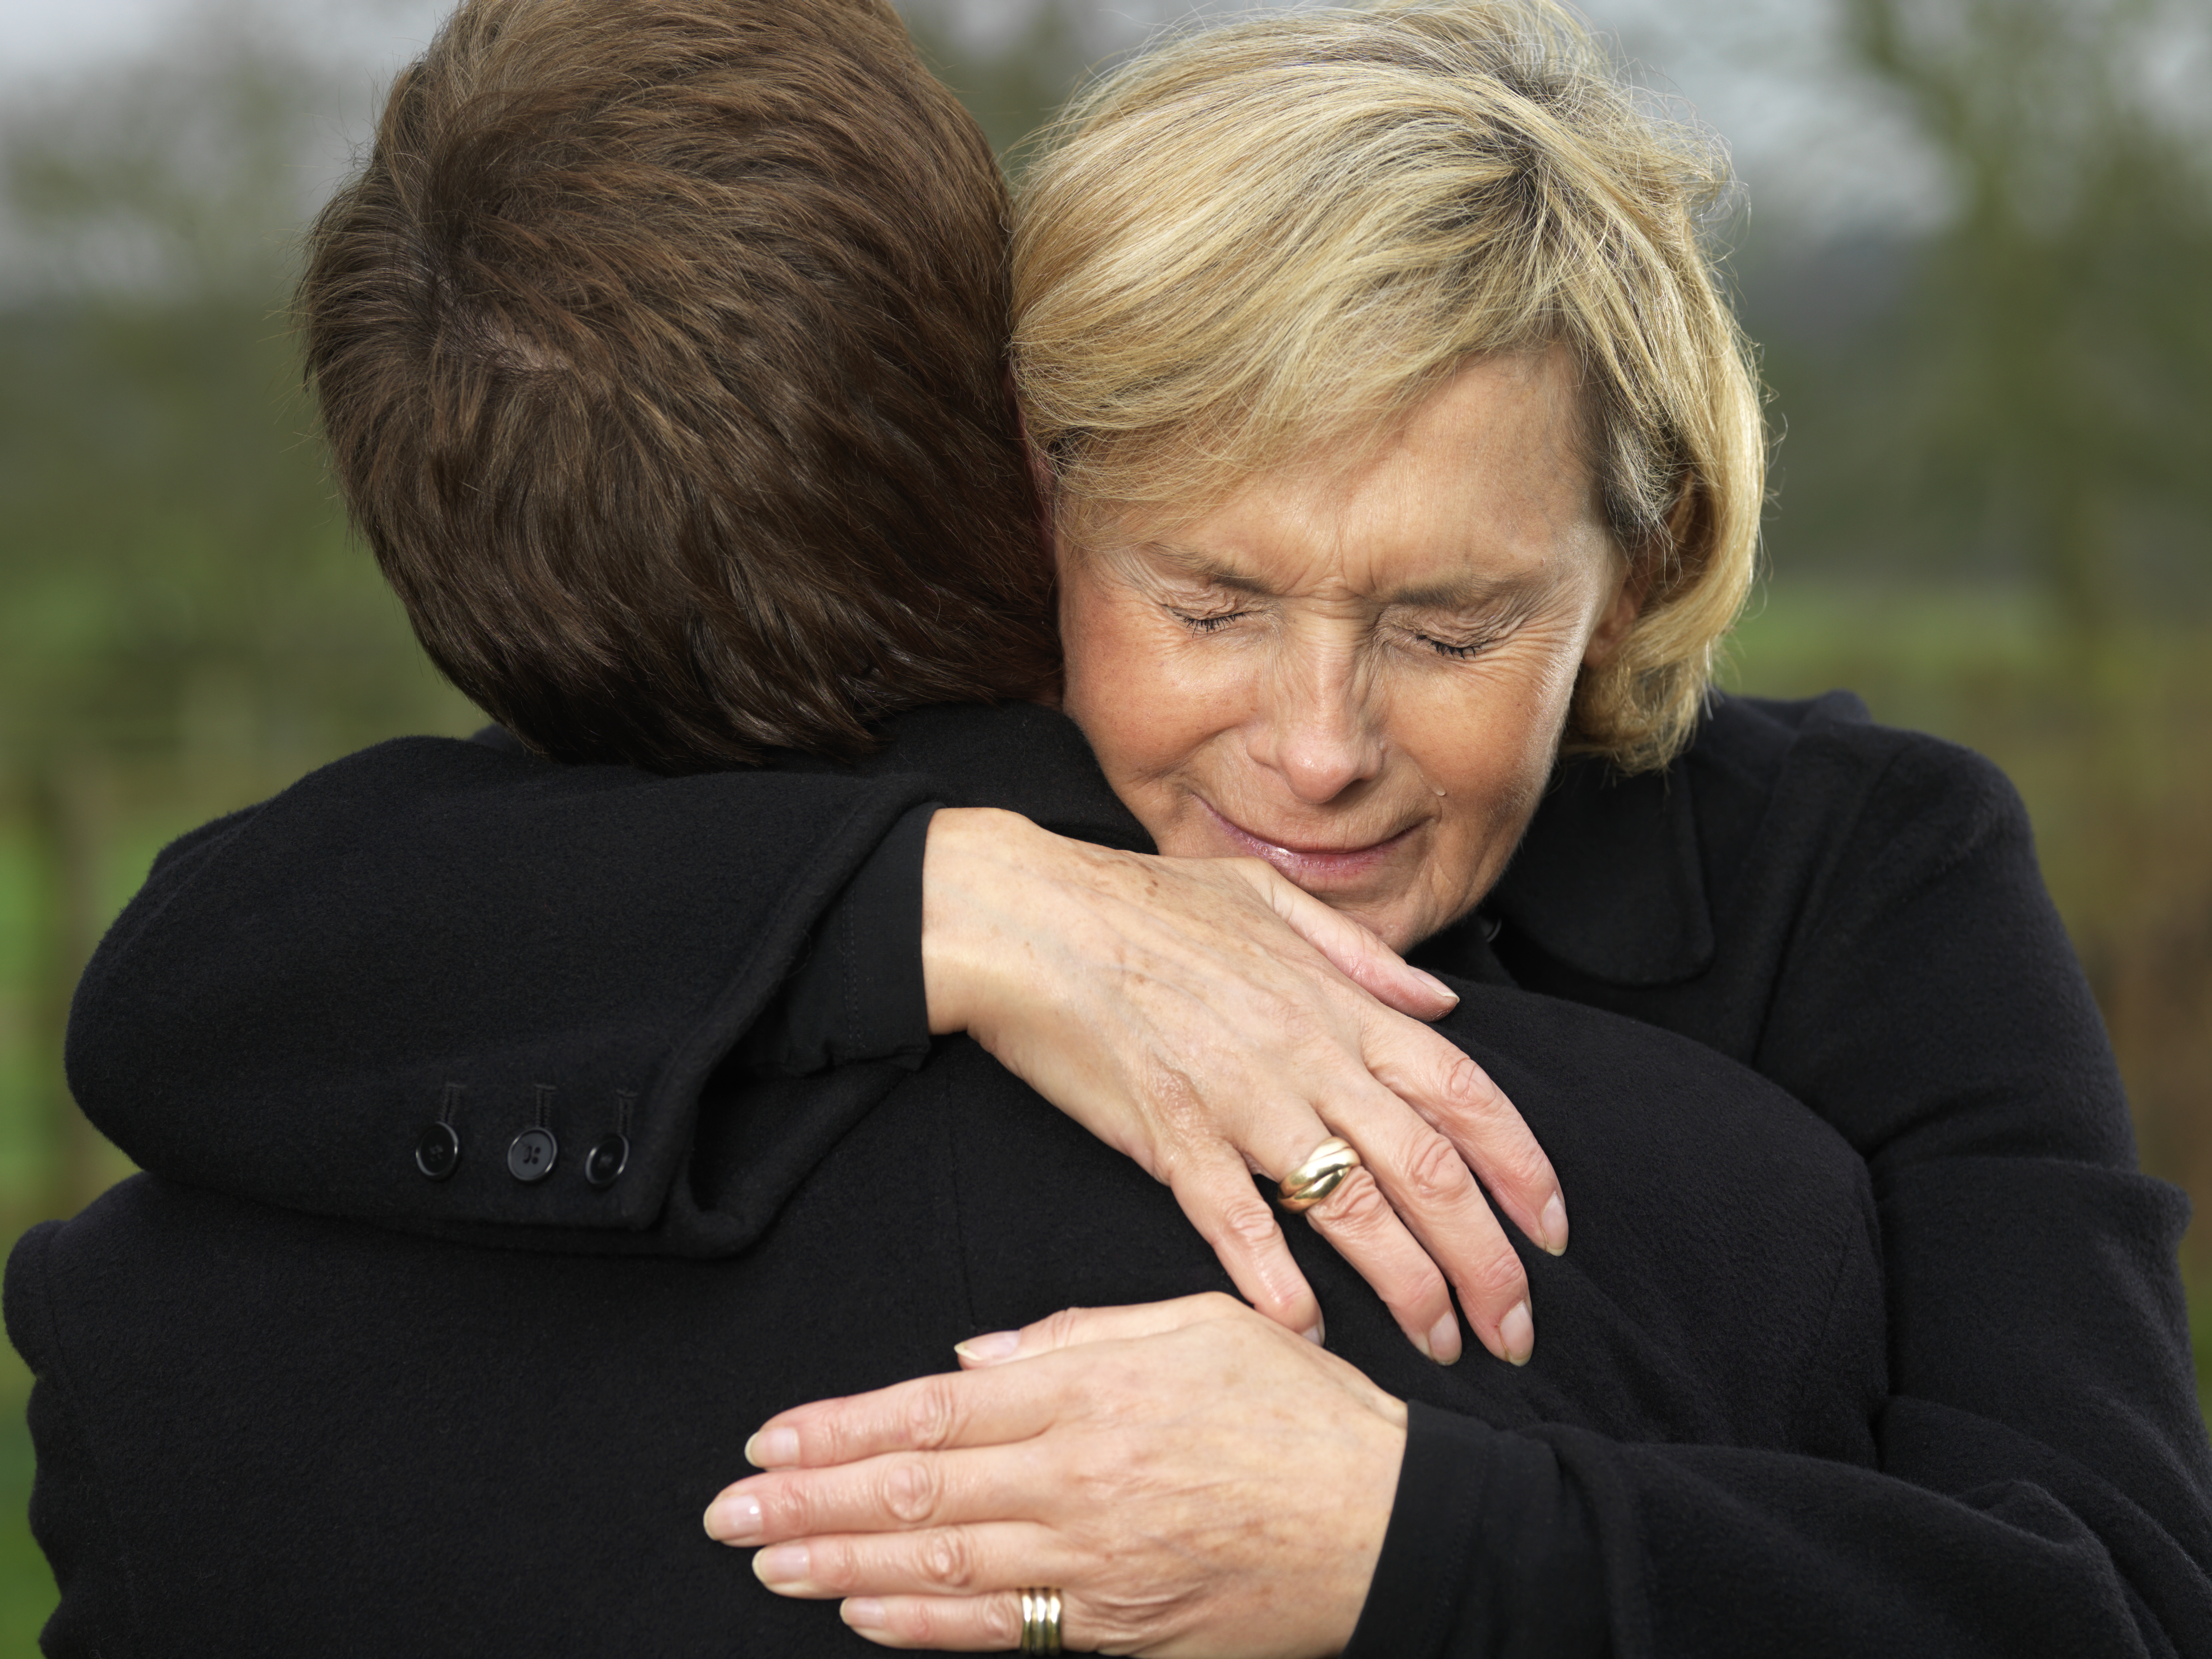 Mujer llorando abraza a un hombre | Foto: Getty Images